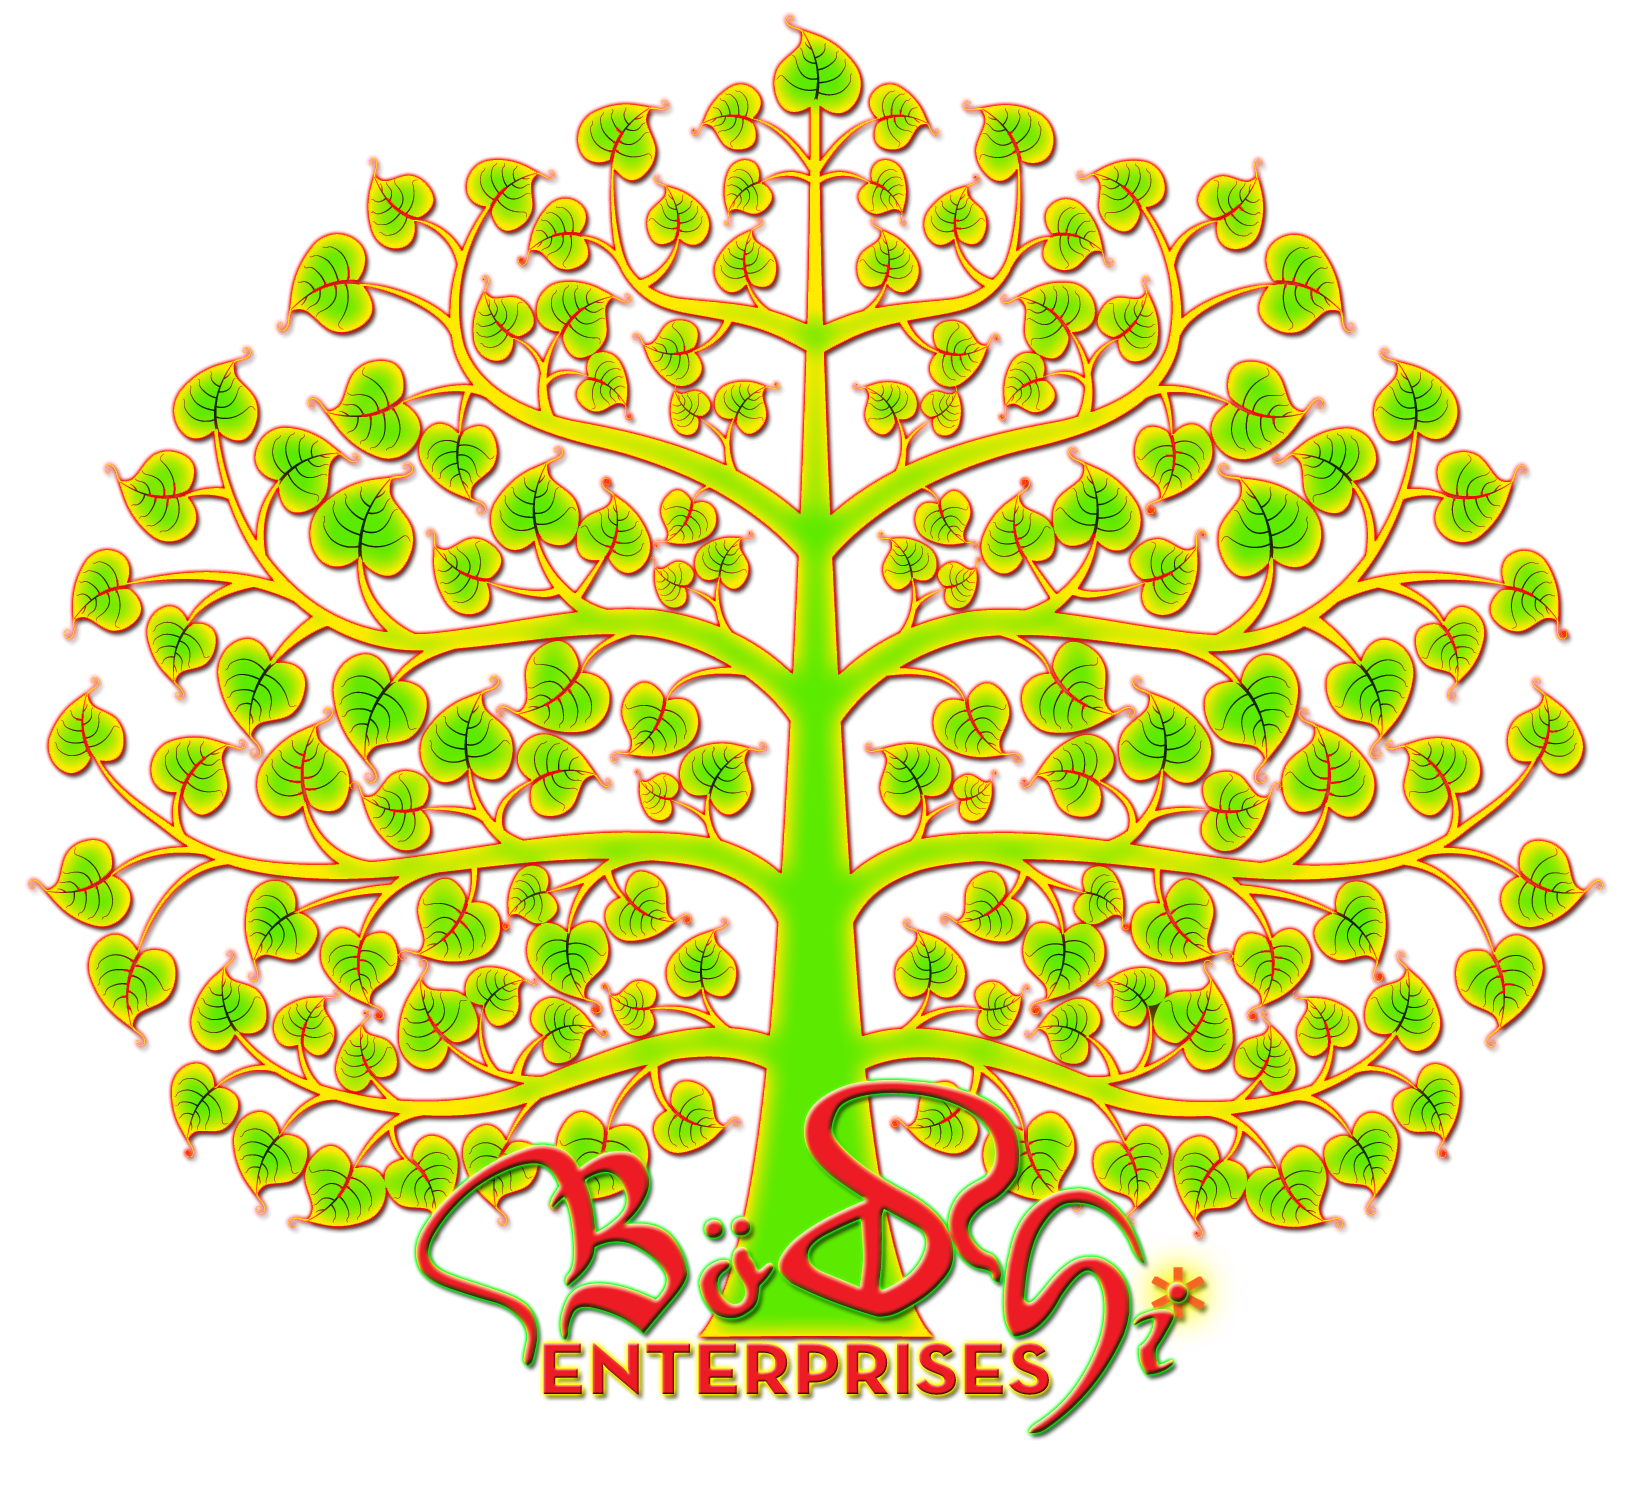 bodhi enterprises logo